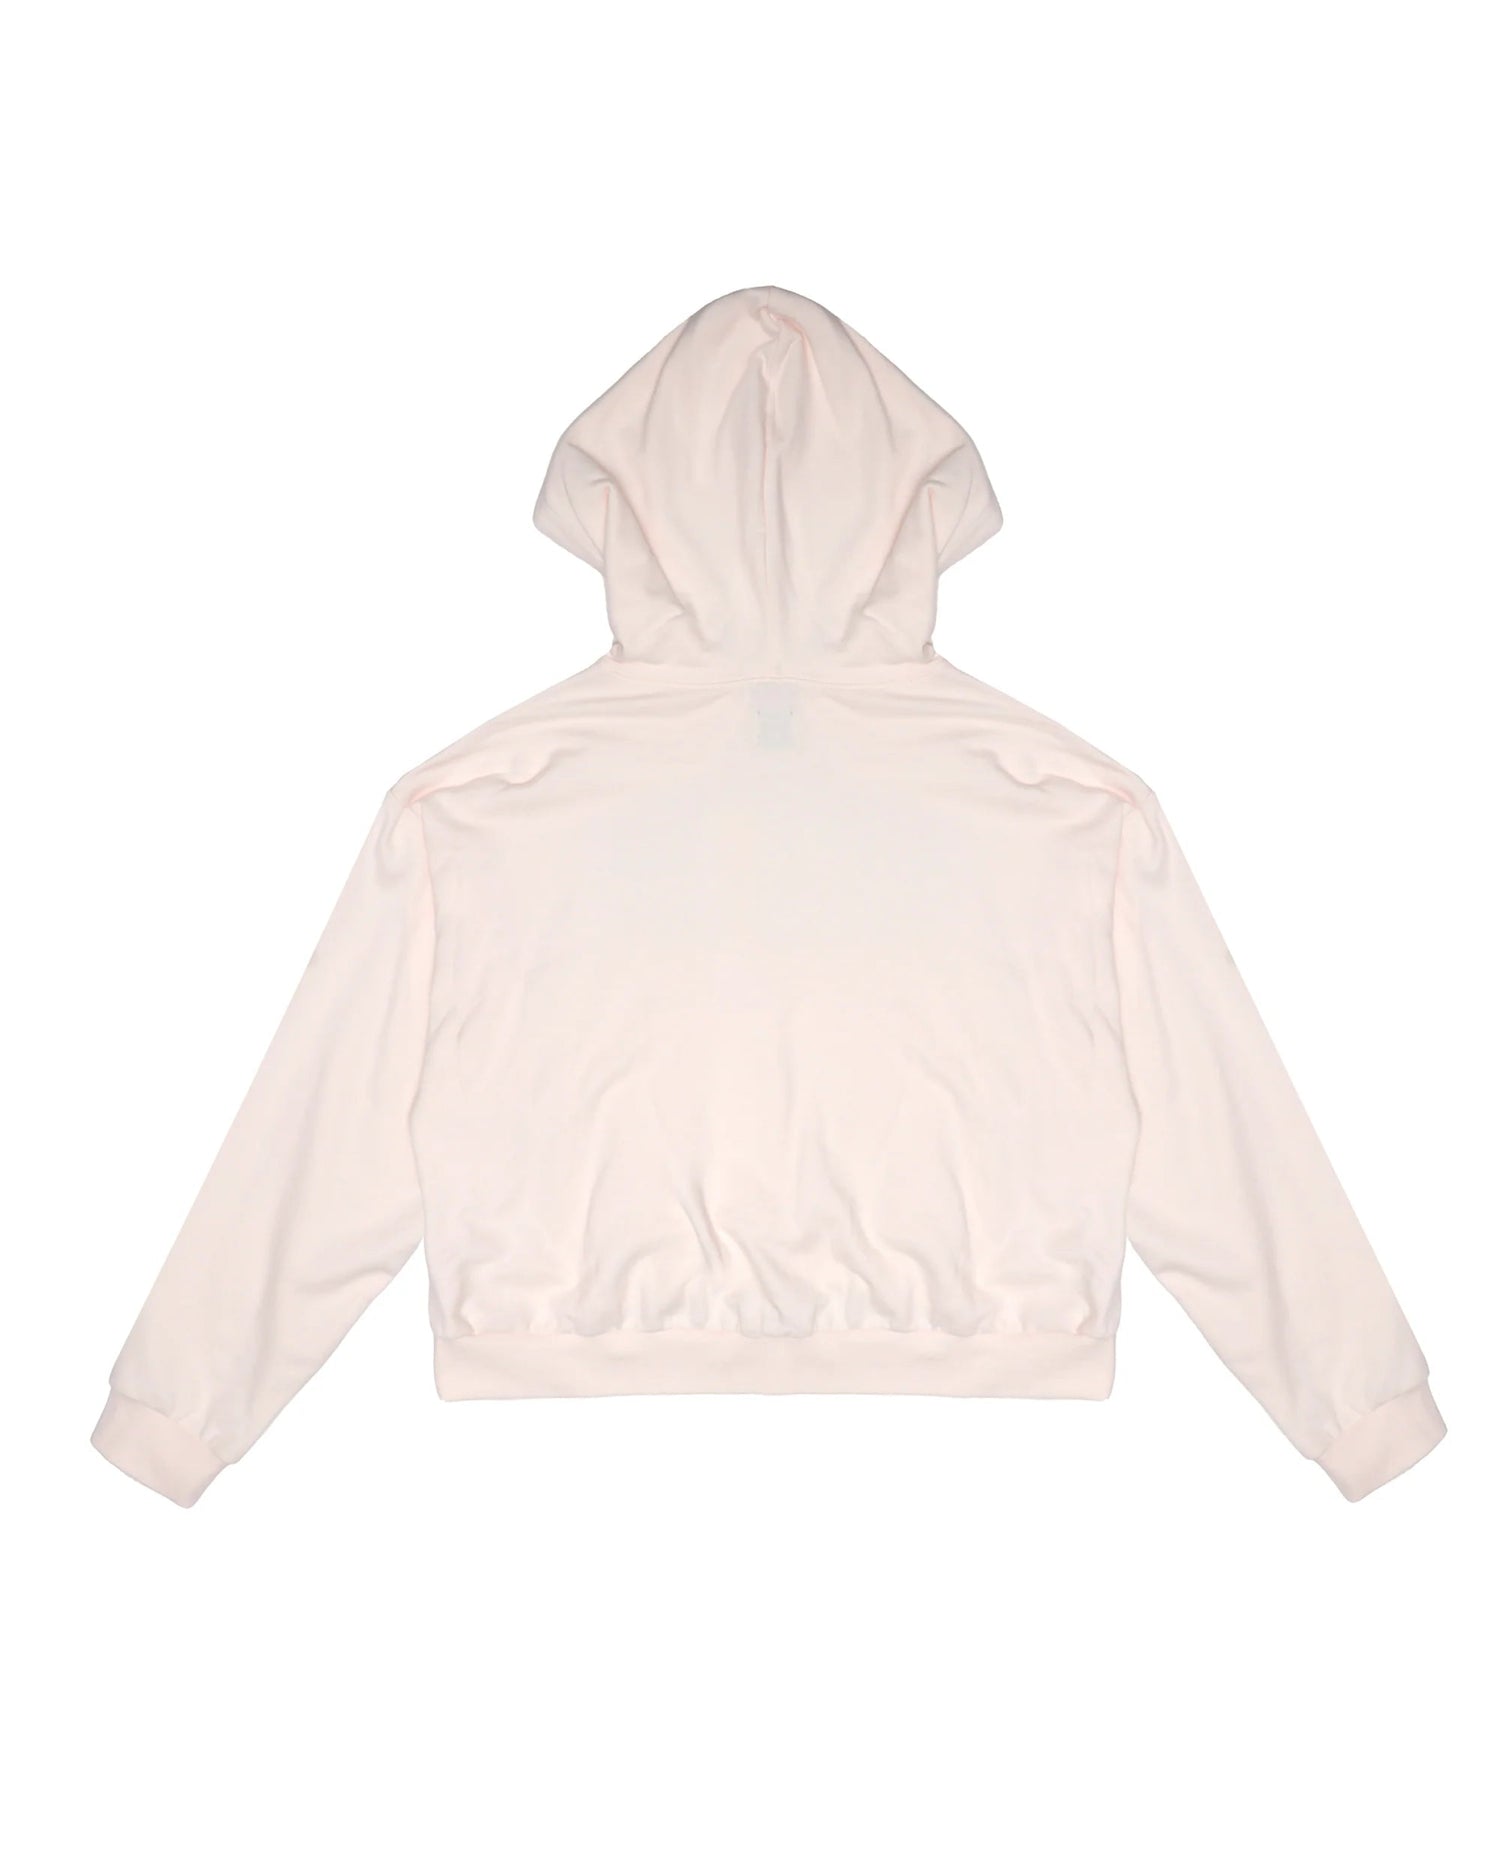 Shop Boys Lie Pink Skies Hoodie - Premium Hooded Sweatshirt from Boys Lie Online now at Spoiled Brat 